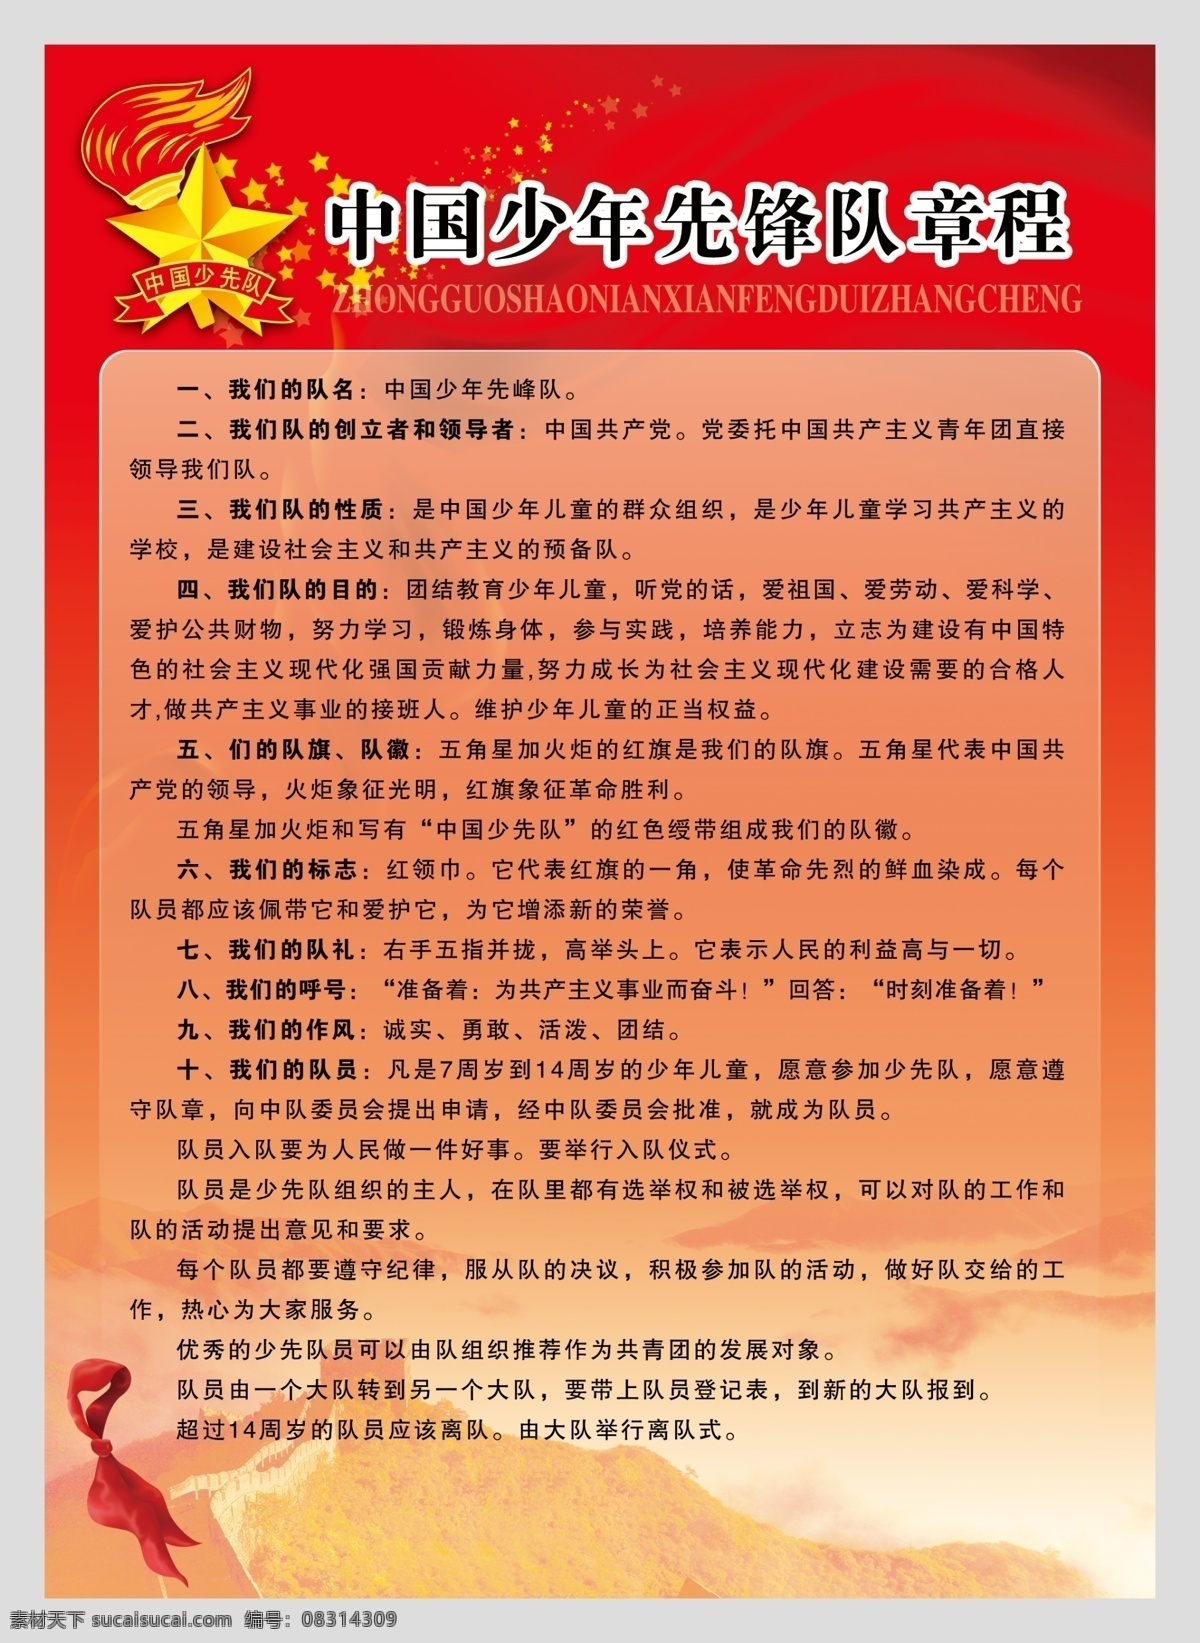 中国少年先锋队 章程 少先队 中国 少年 先锋队 展板模板 广告设计模板 源文件